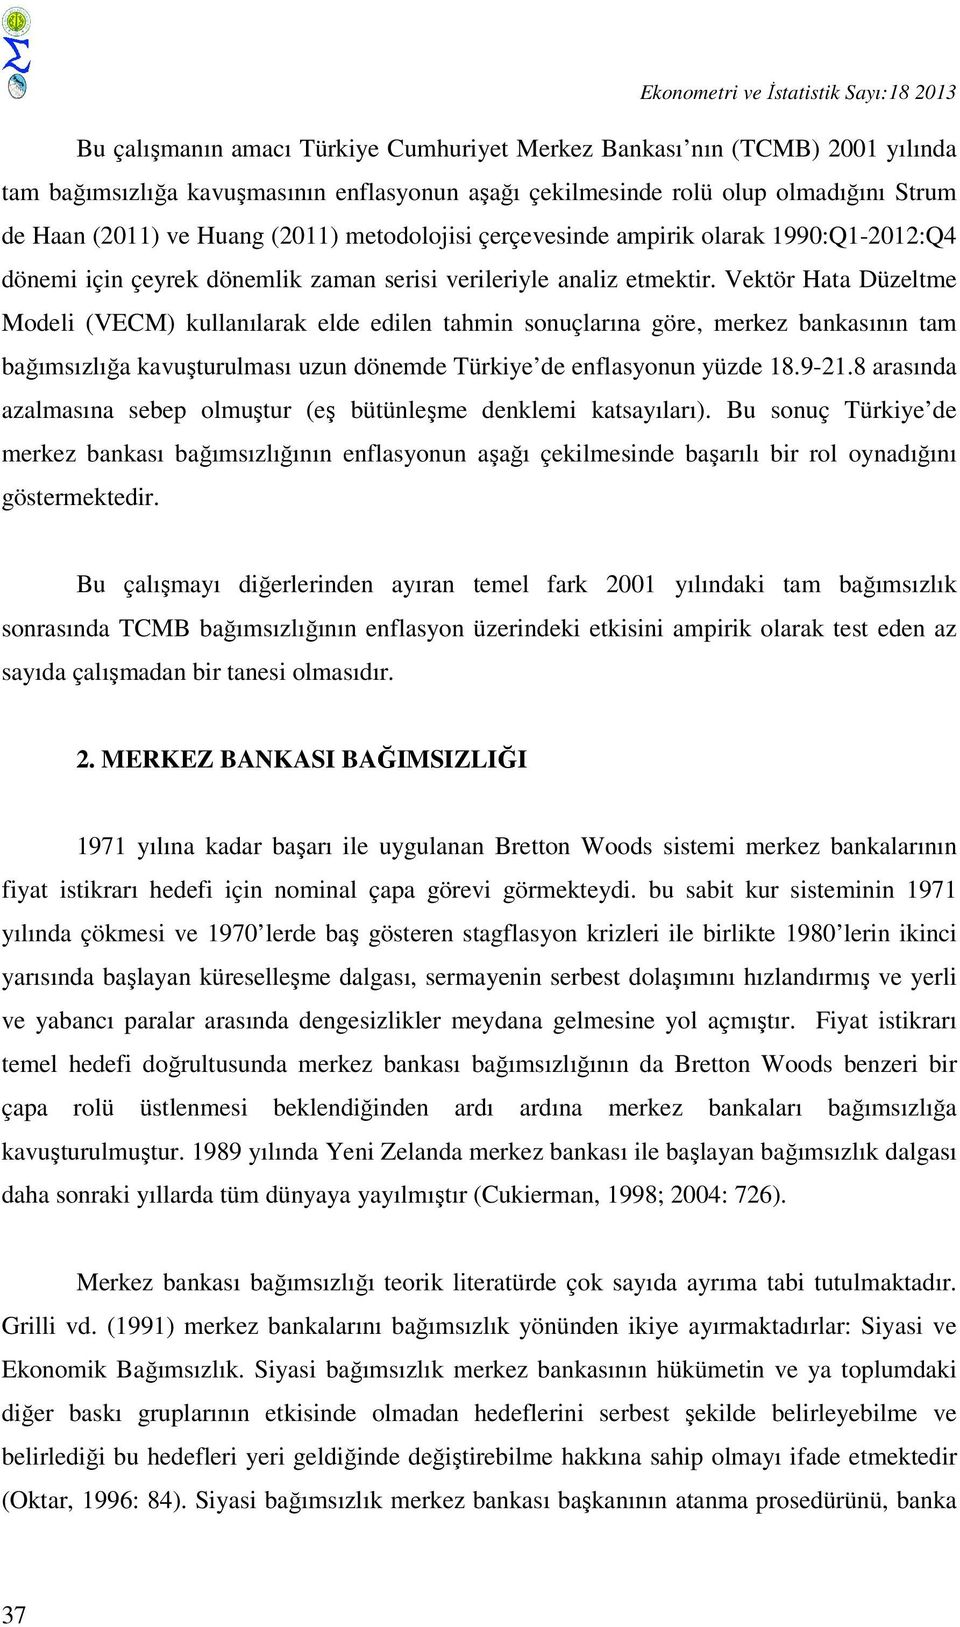 Vektör Hata Düzeltme Modeli (VECM) kullanılarak elde edilen tahmin sonuçlarına göre, merkez bankasının tam bağımsızlığa kavuşturulması uzun dönemde Türkiye de enflasyonun yüzde 18.9-21.